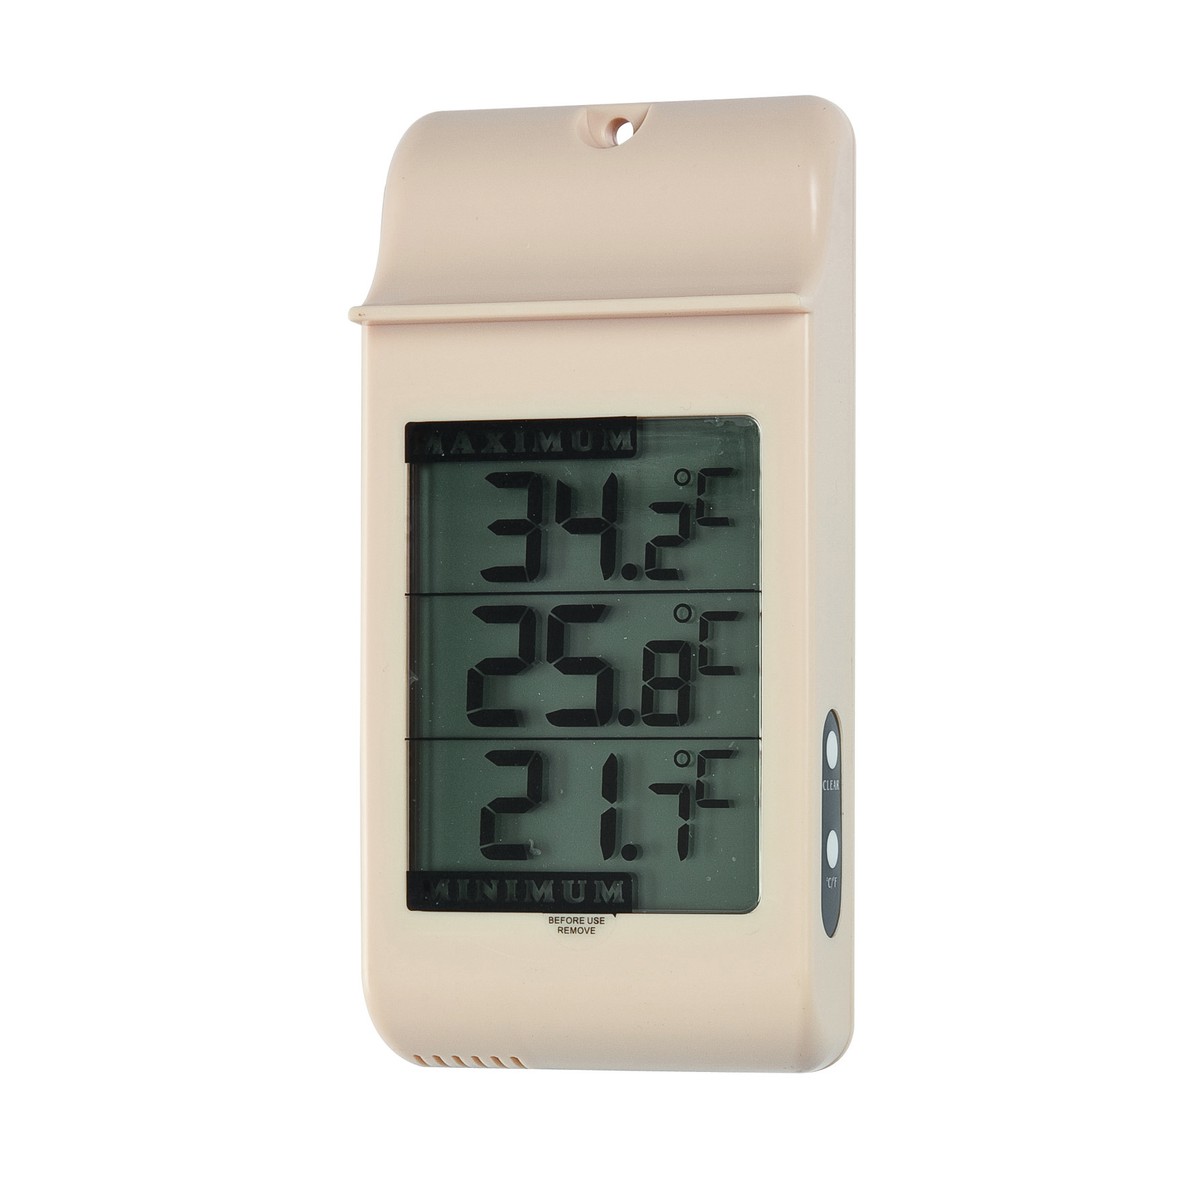   Thermomètre Maxi mini 70006  16cm